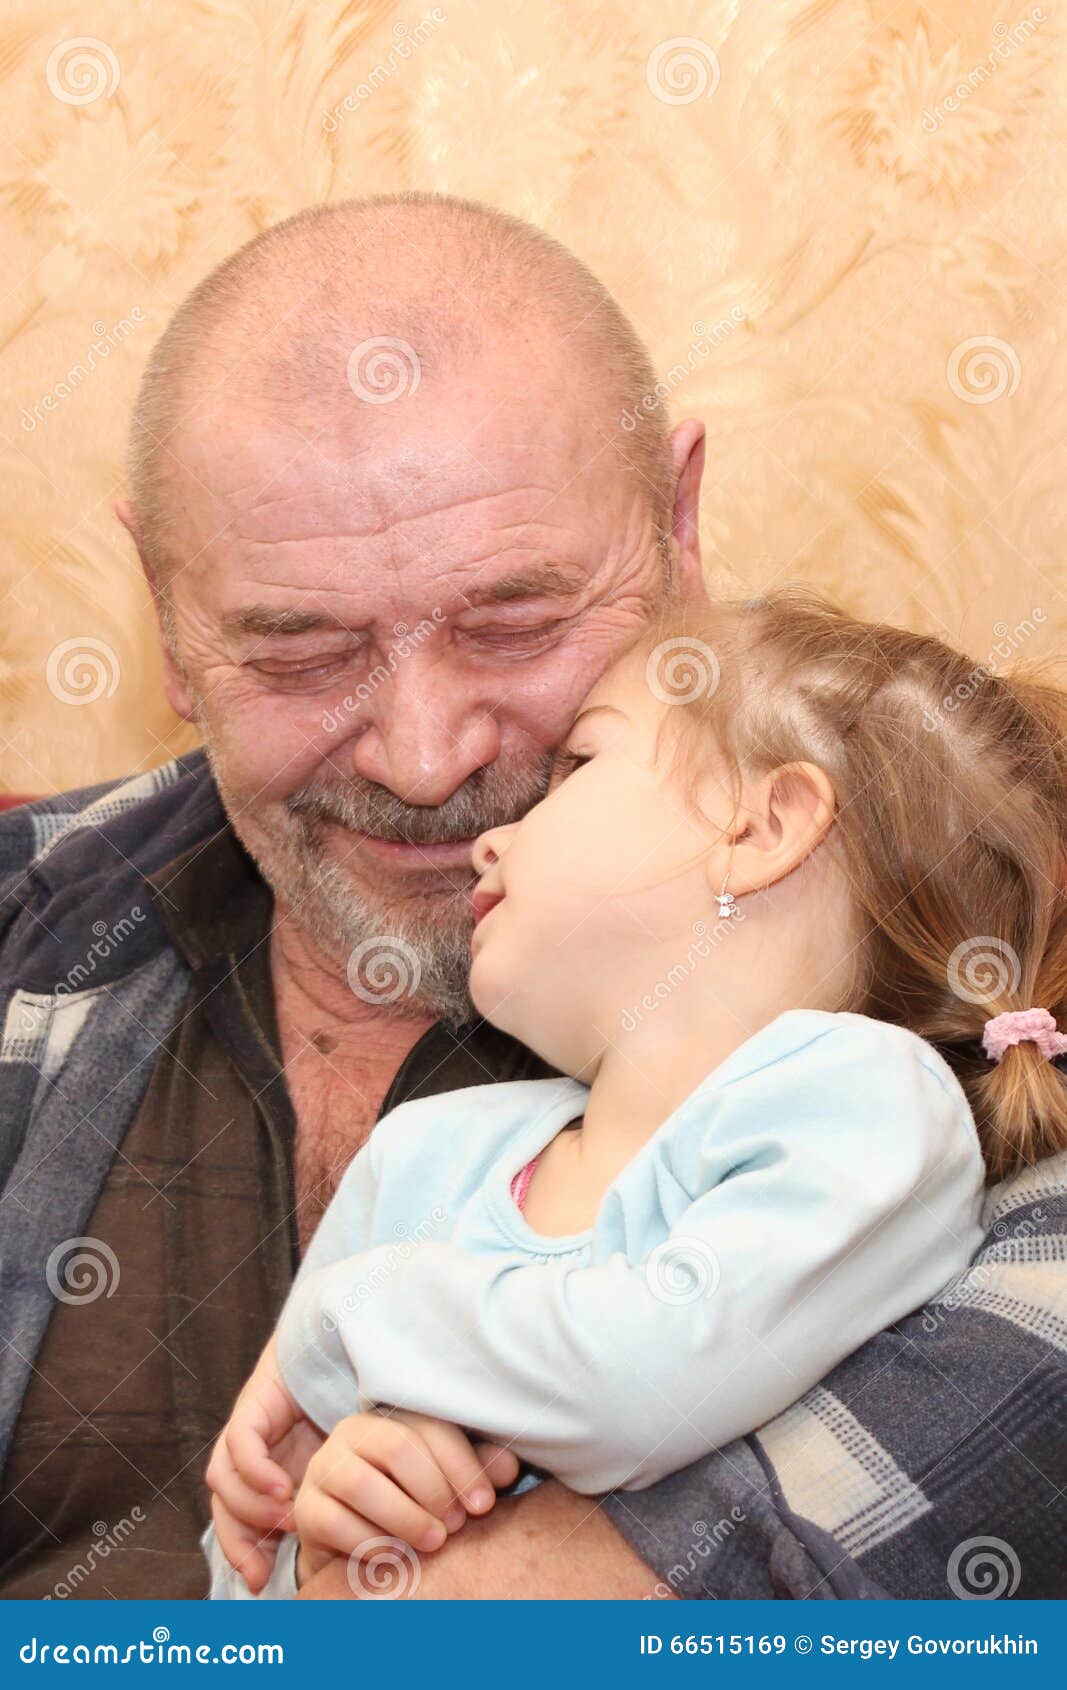 дед и малолетка эротика (120) фото